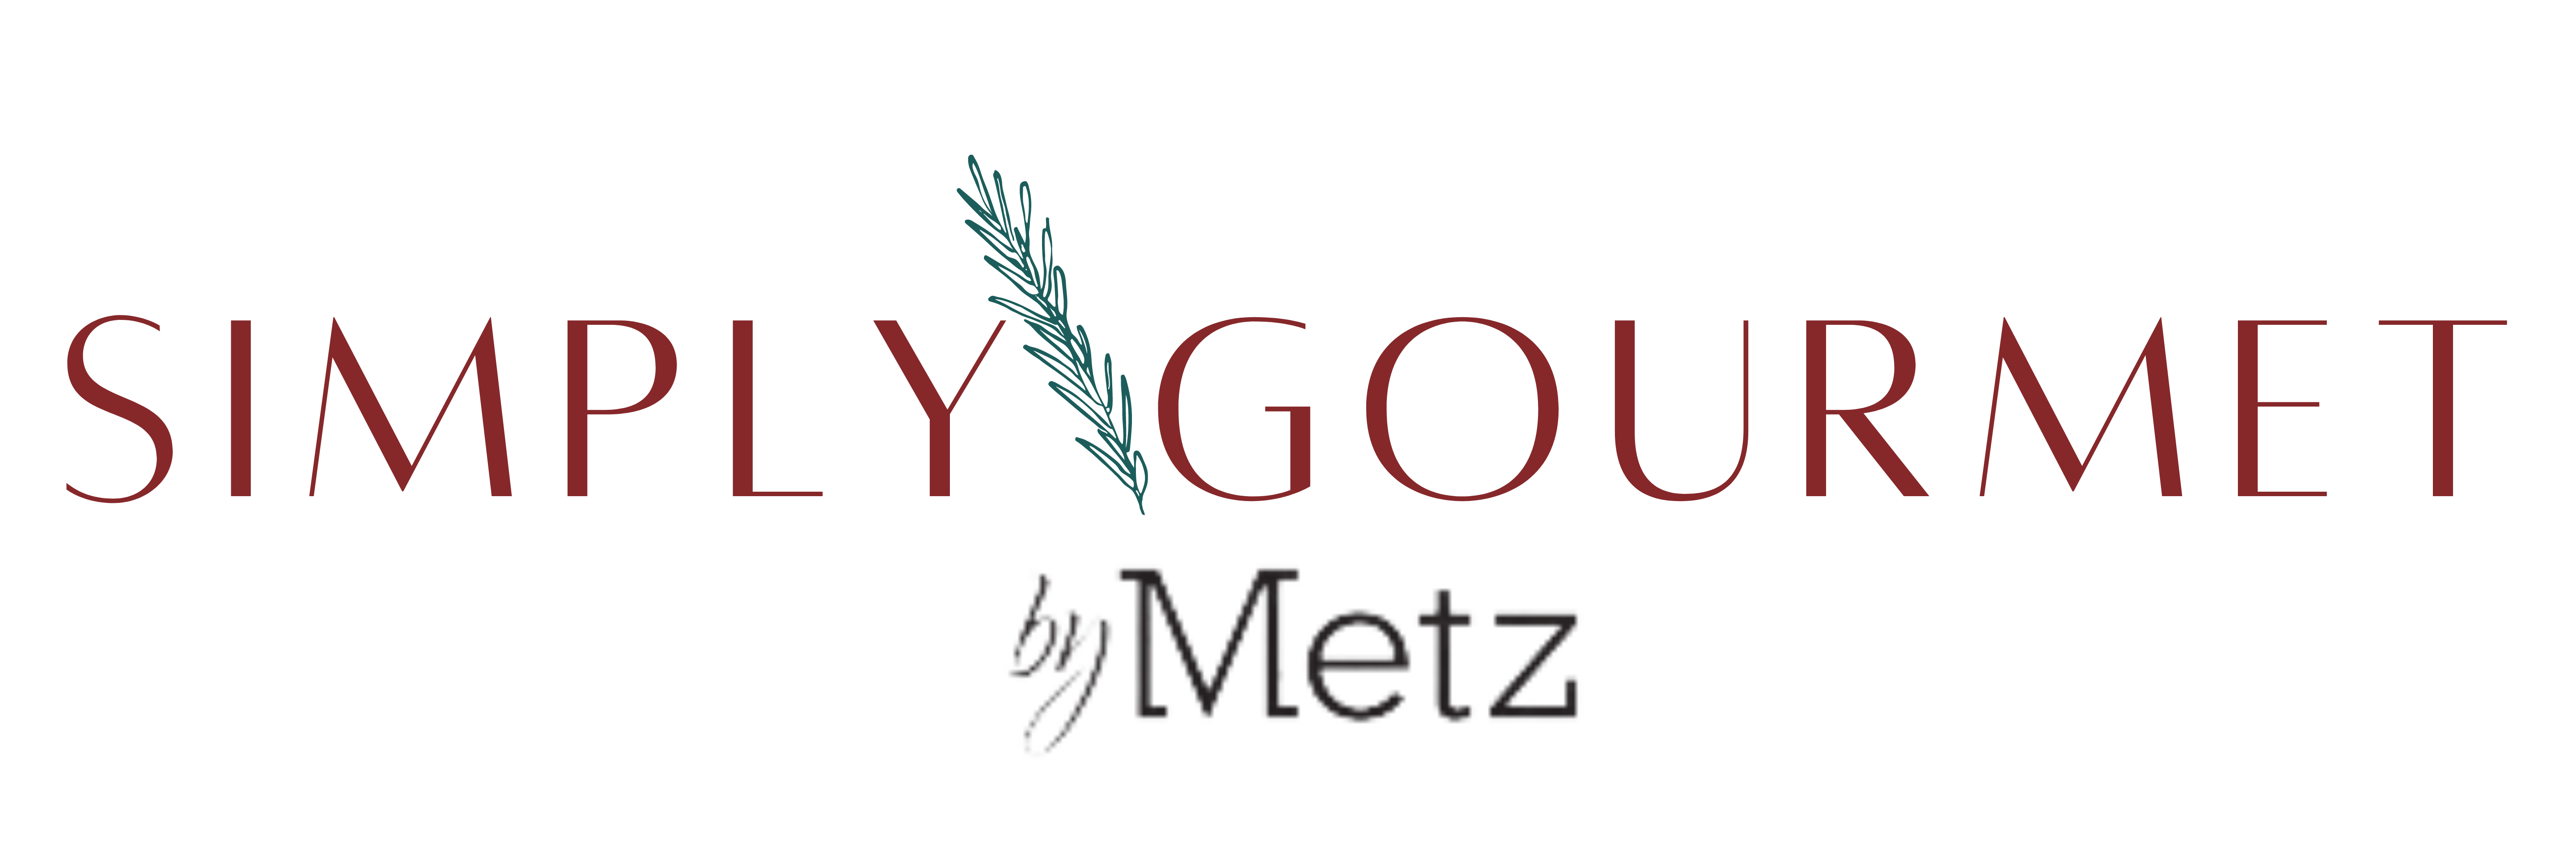 Simply Gourmet by Metz